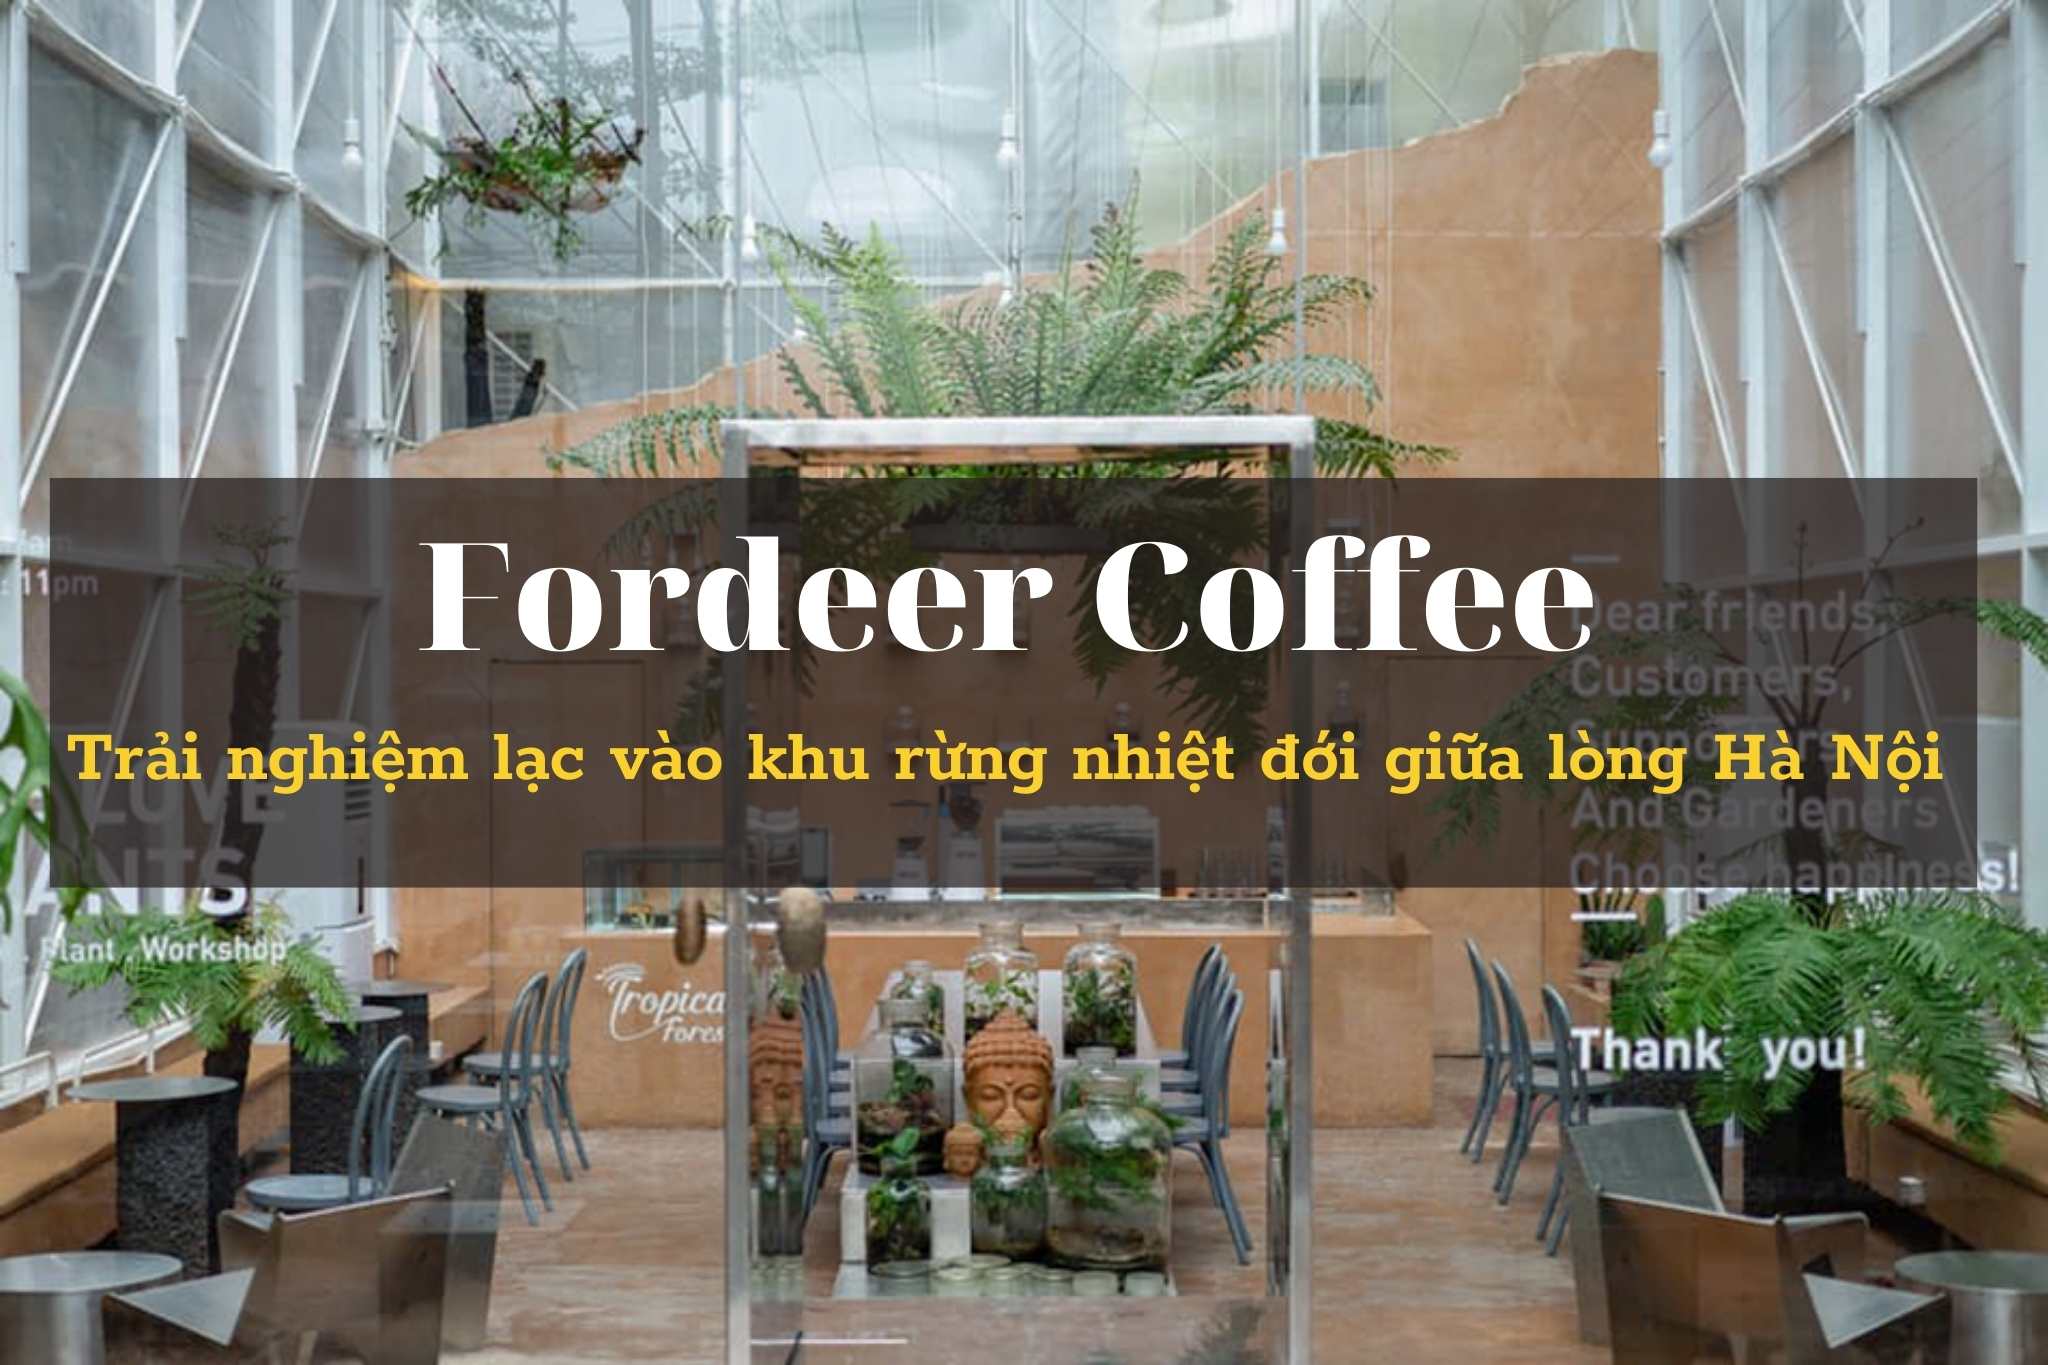 Khám phá không gian xanh trong thiết kế Fordeer Coffee